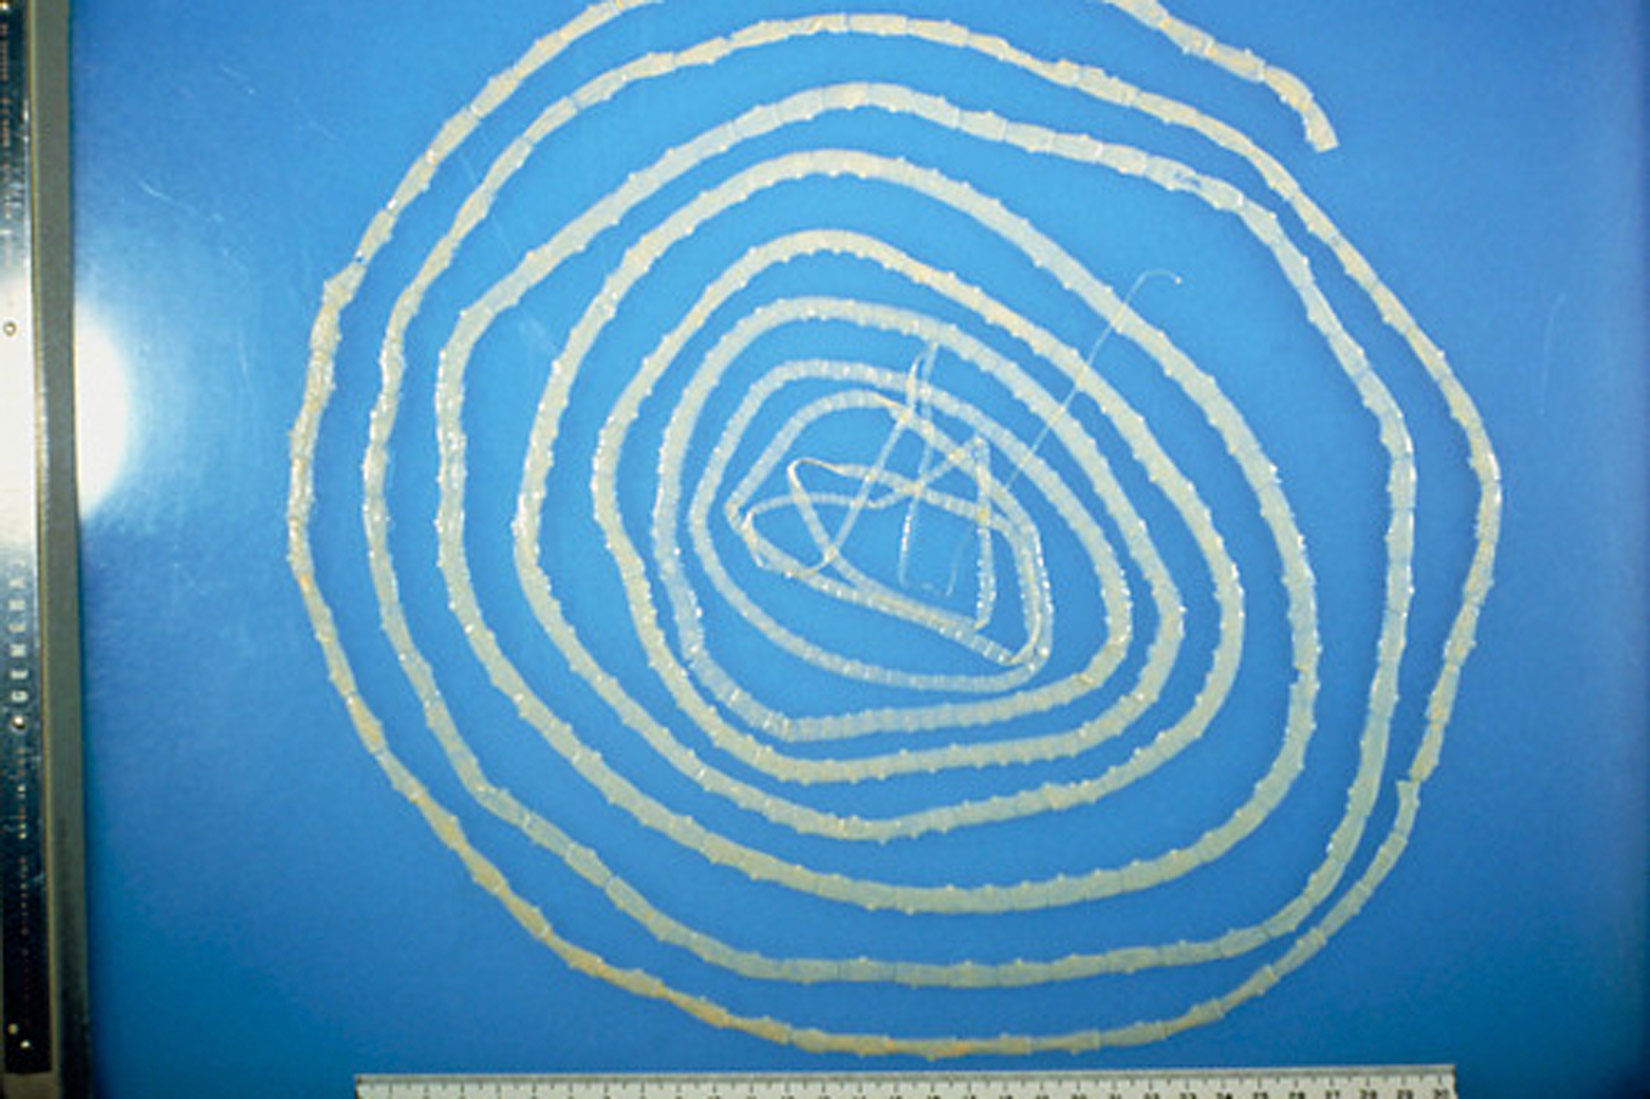 Slika prikazuje goveđu trakavicu koja je smotana u spiralu. Vrlo je dugačka, blijeda i prozirna, a tijelo joj je podijeljeno na članke pravokutnog oblika.